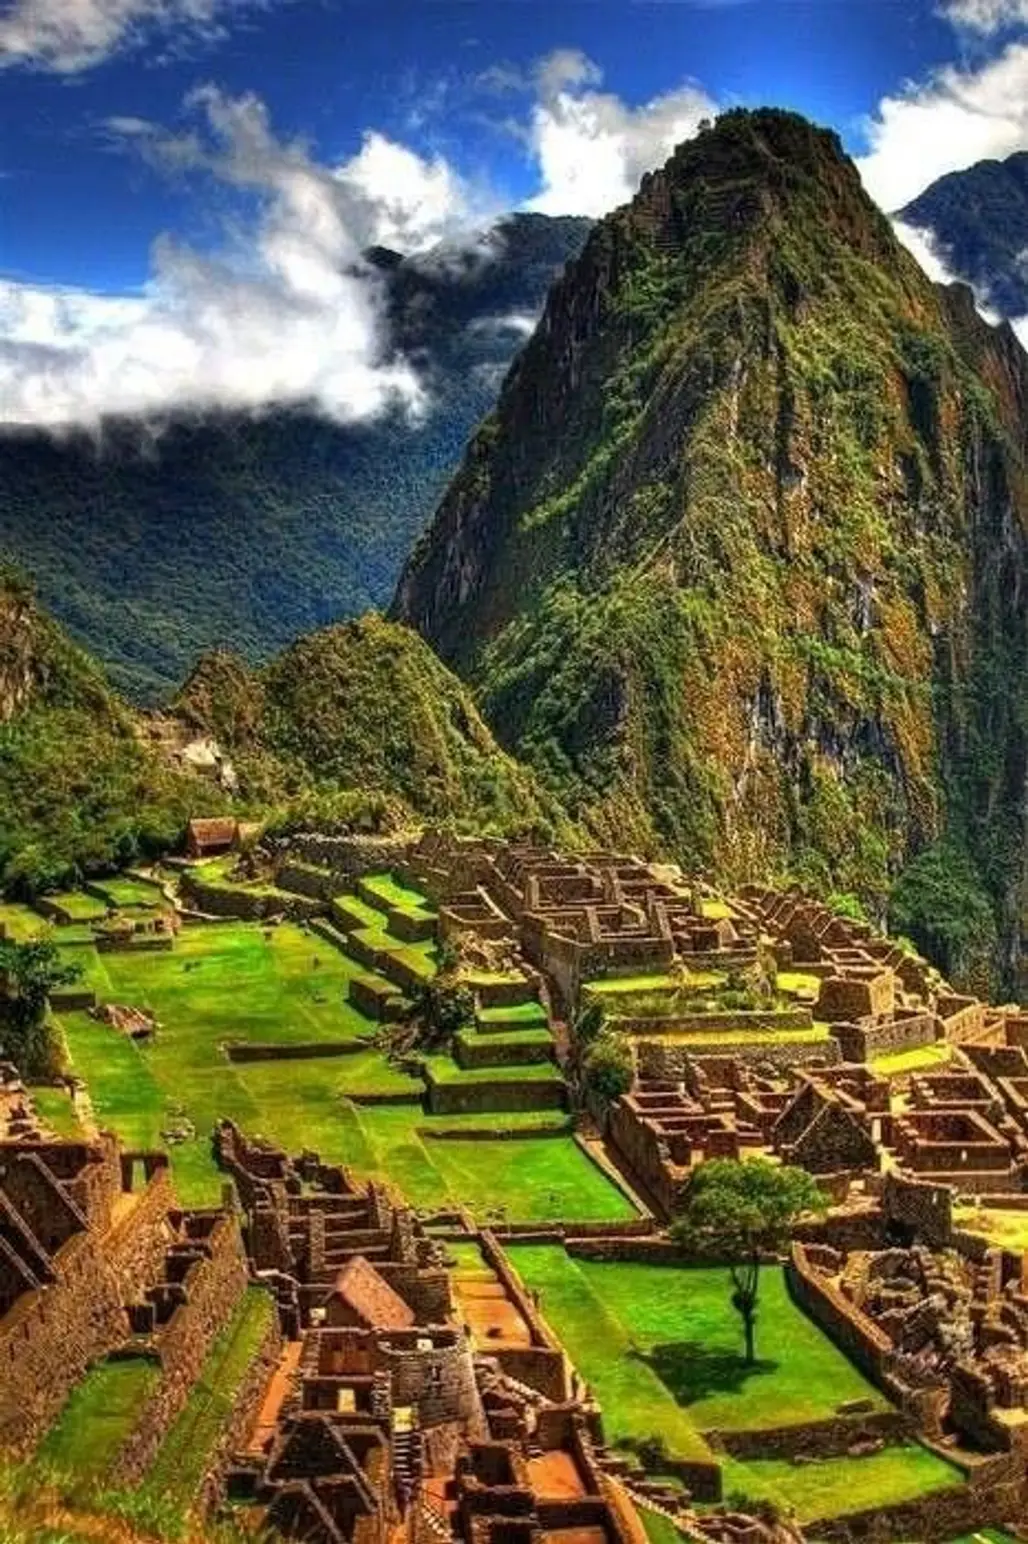 Lost City of the Incas, Machu Pichu, Peru